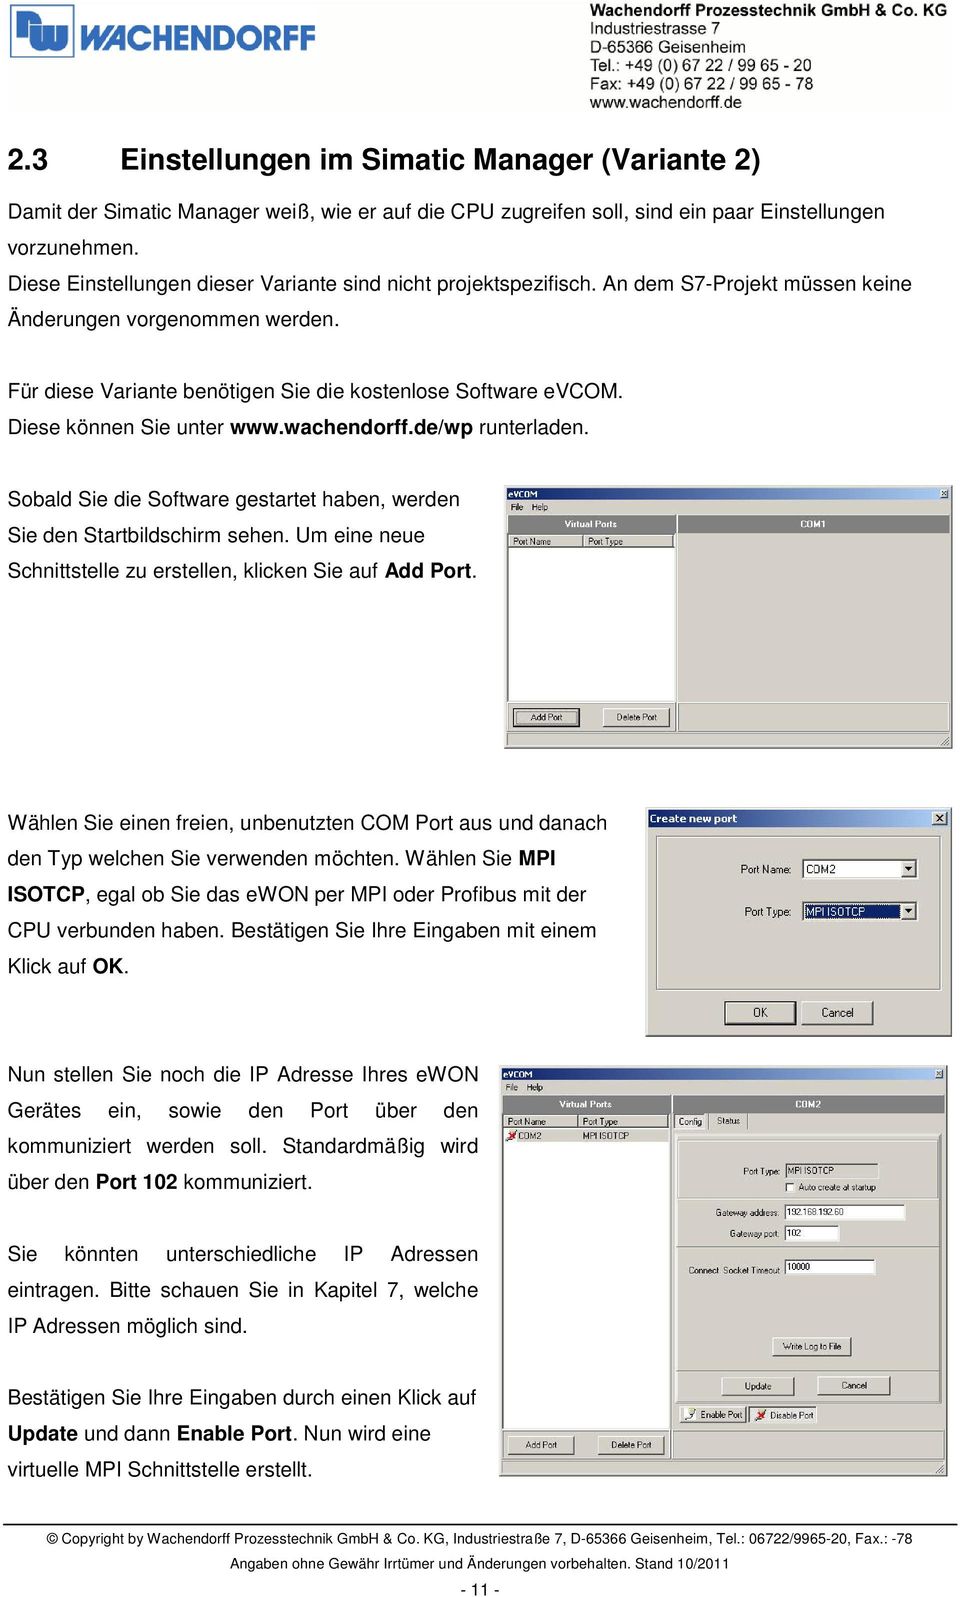 Diese können Sie unter www.wachendorff.de/wp runterladen. Sobald Sie die Software gestartet haben, werden Sie den Startbildschirm sehen.